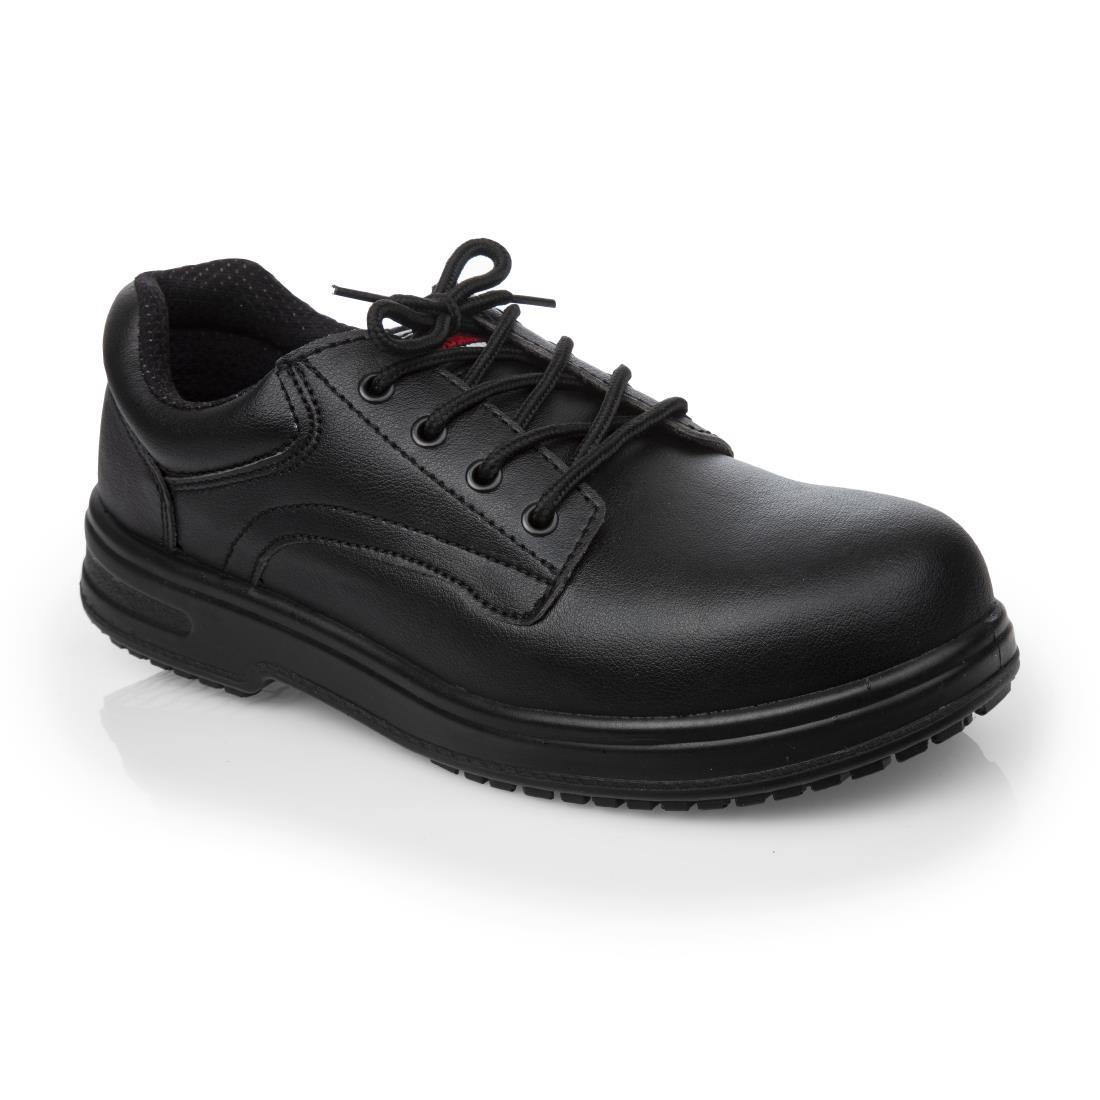 Slipbuster Basic Toe Cap Safety Shoes Black 43 - BB497-43  - 1